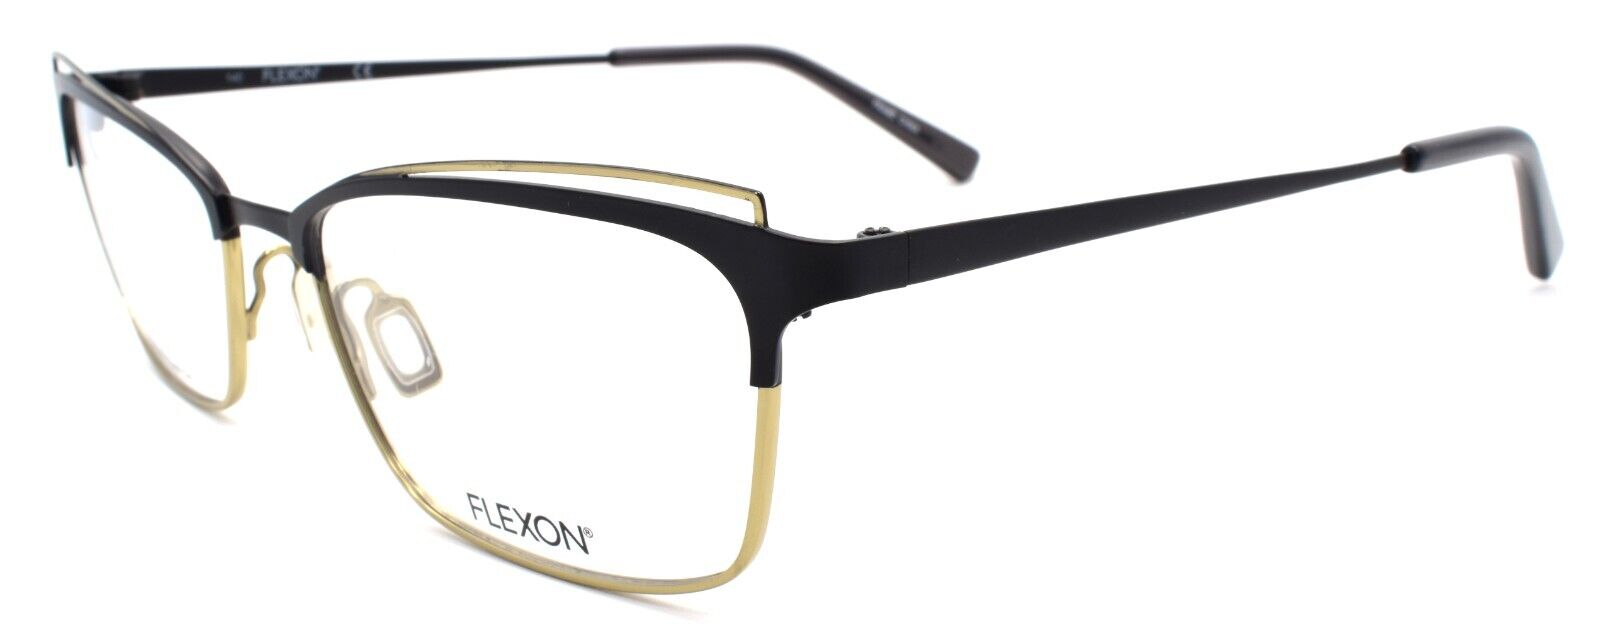 1-Flexon W3102 001 Women's Eyeglasses Frames Black 53-18-140 Flexible Titanium-886895484909-IKSpecs